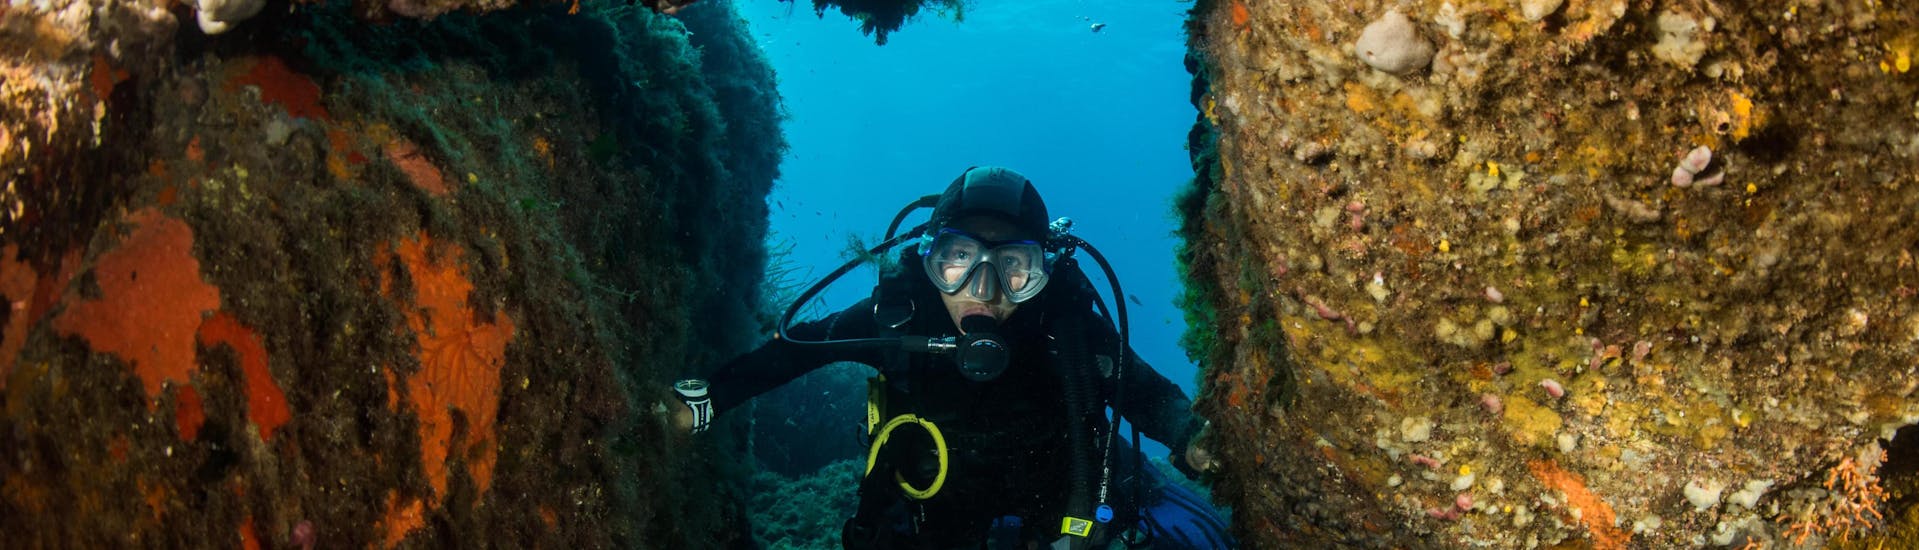 Un plongeur profite des fonds marins en Corse pendant une excursion de plongée.